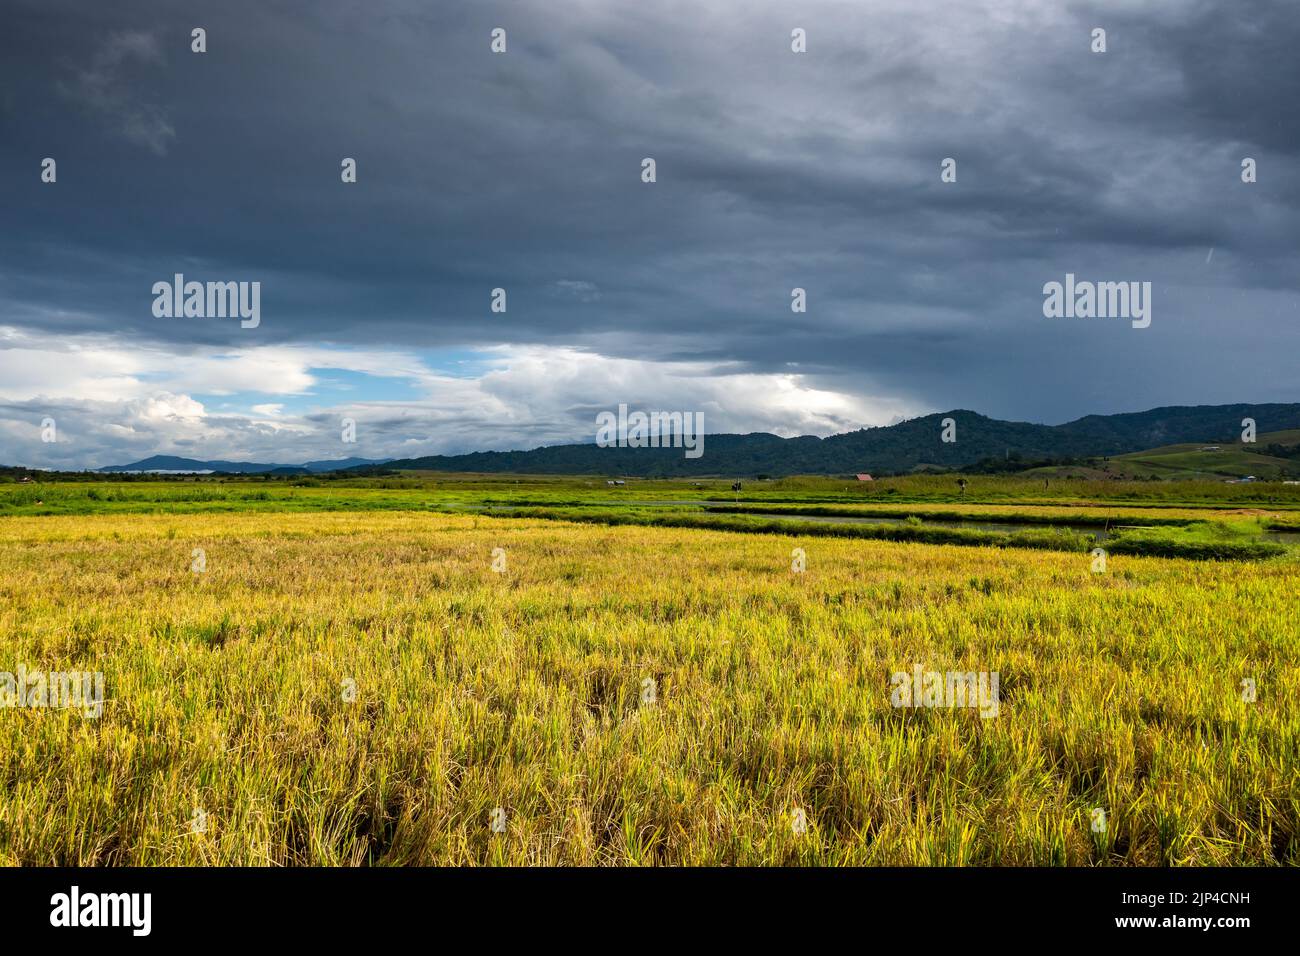 Dunkle Wolken über goldenem Reisfeld. Sulawesi, Indonesien. Stockfoto